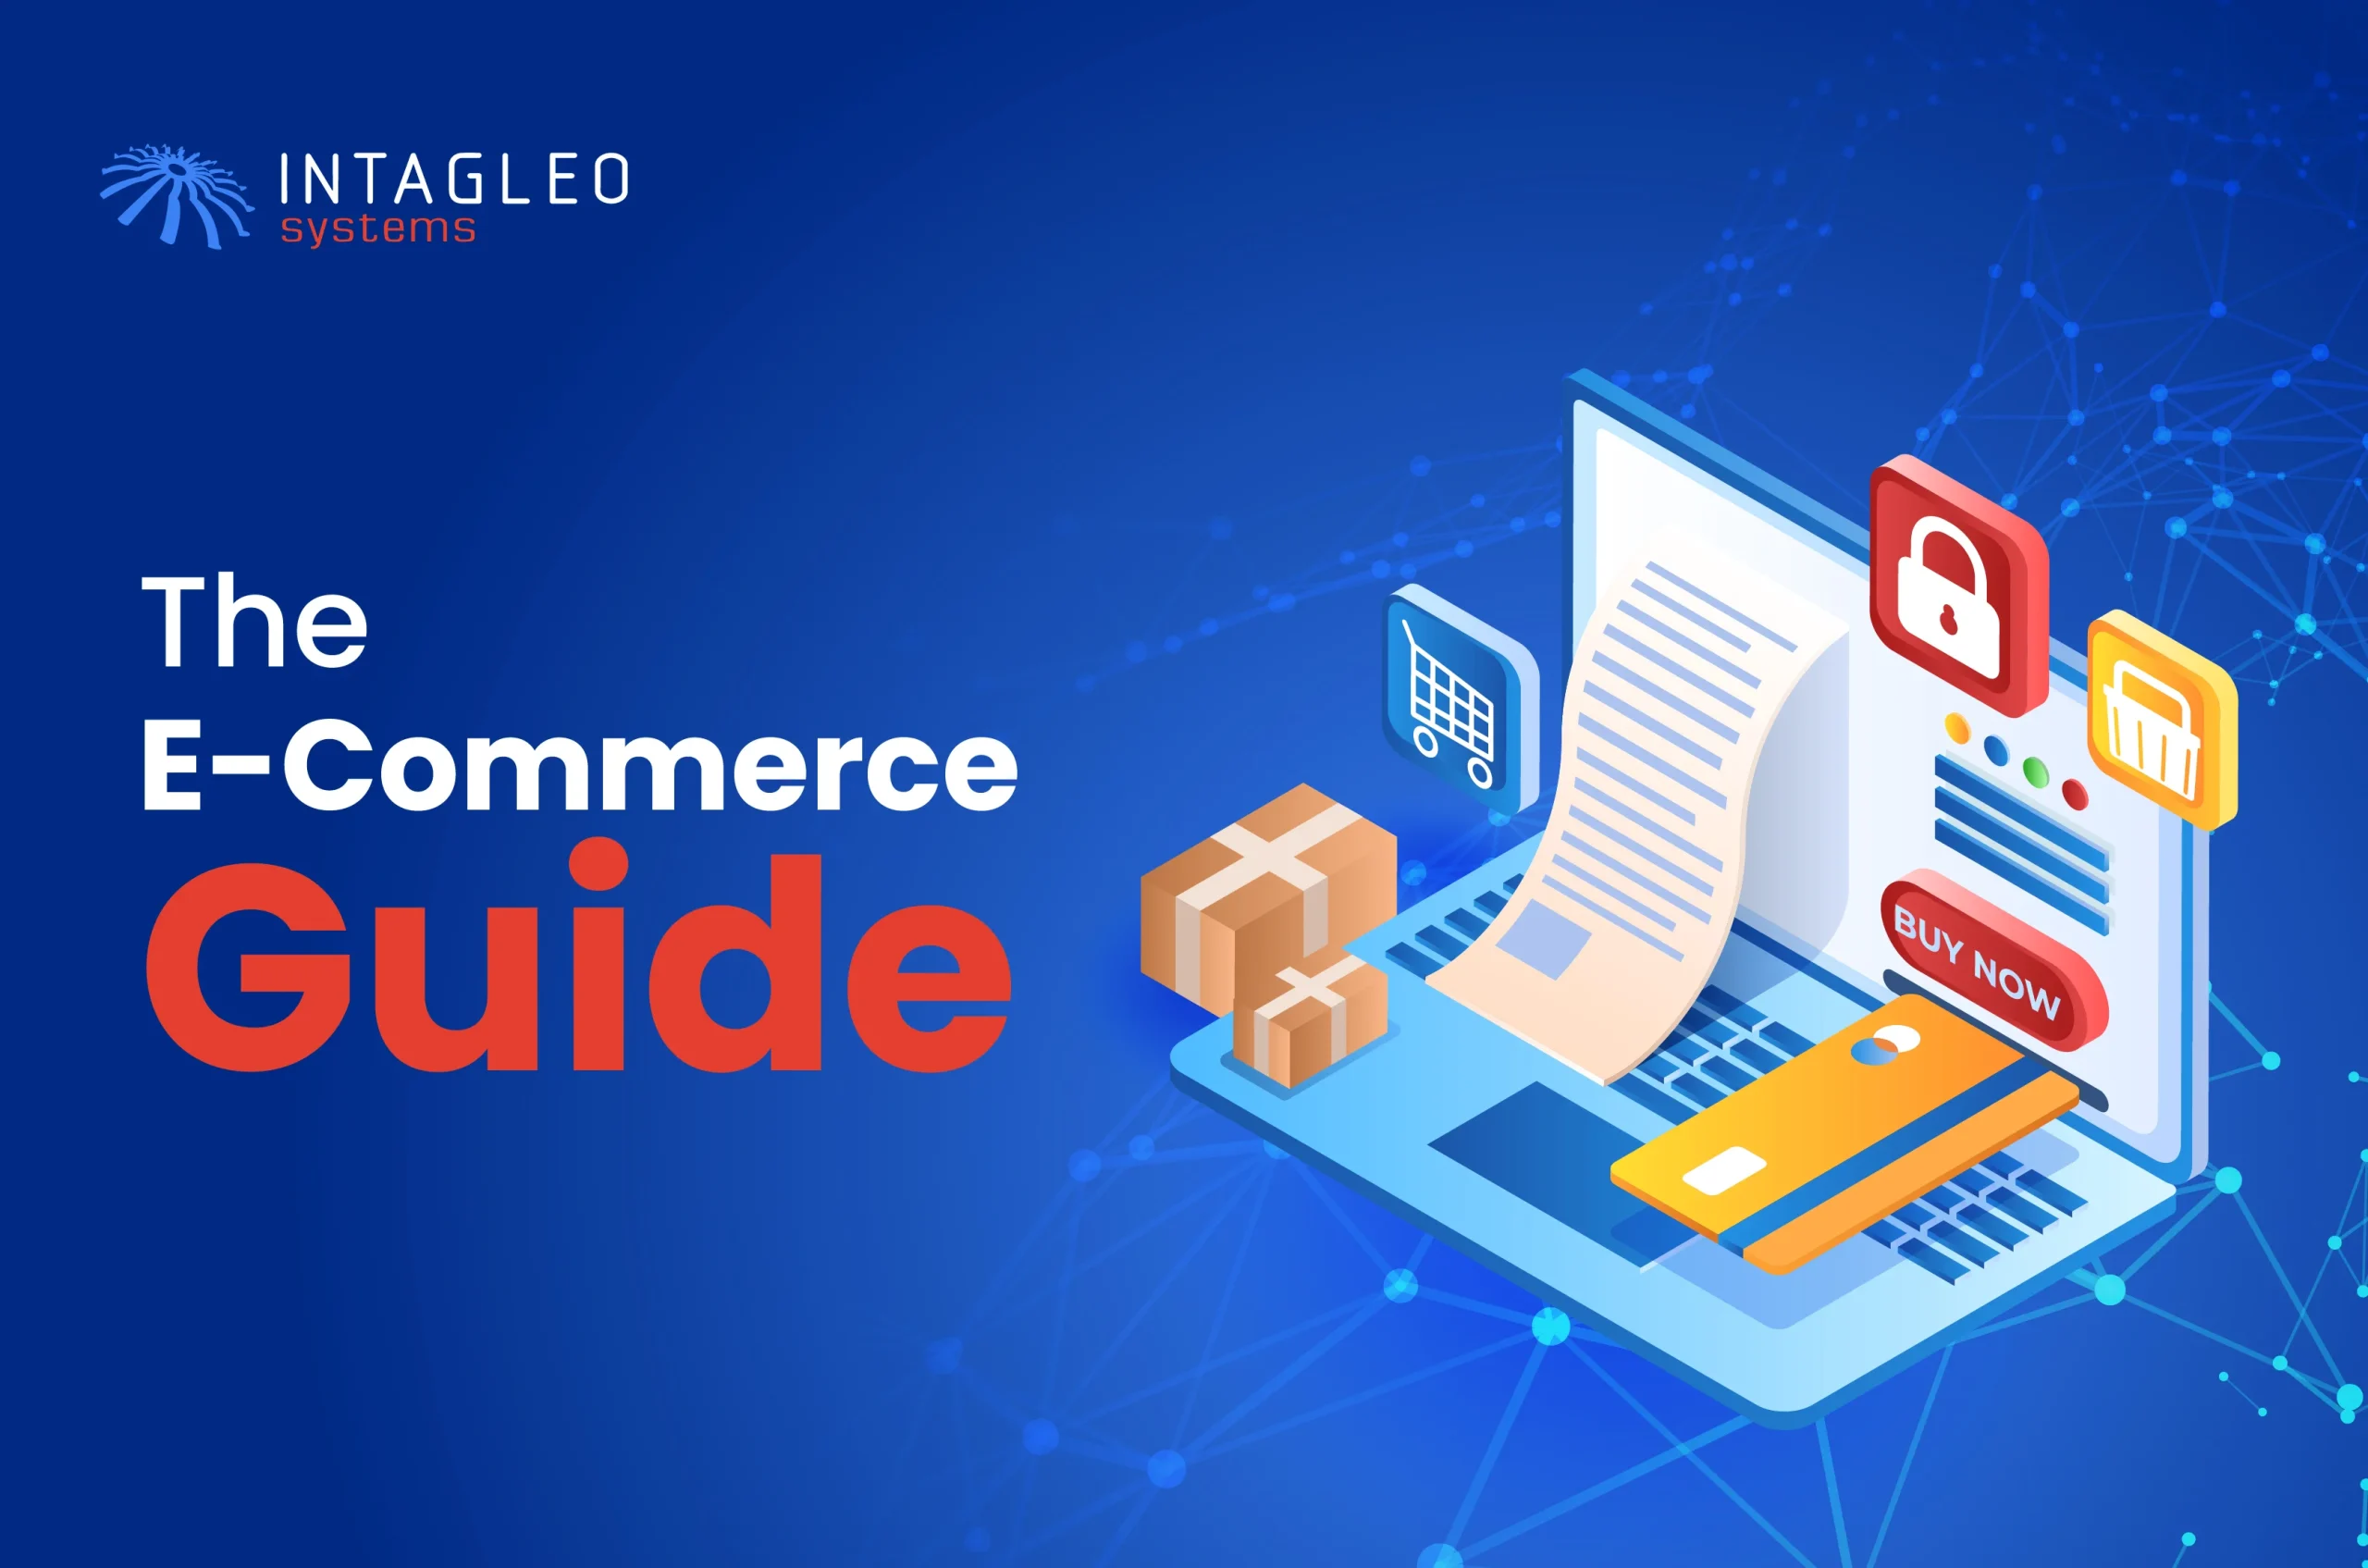 The E-commerce Guide